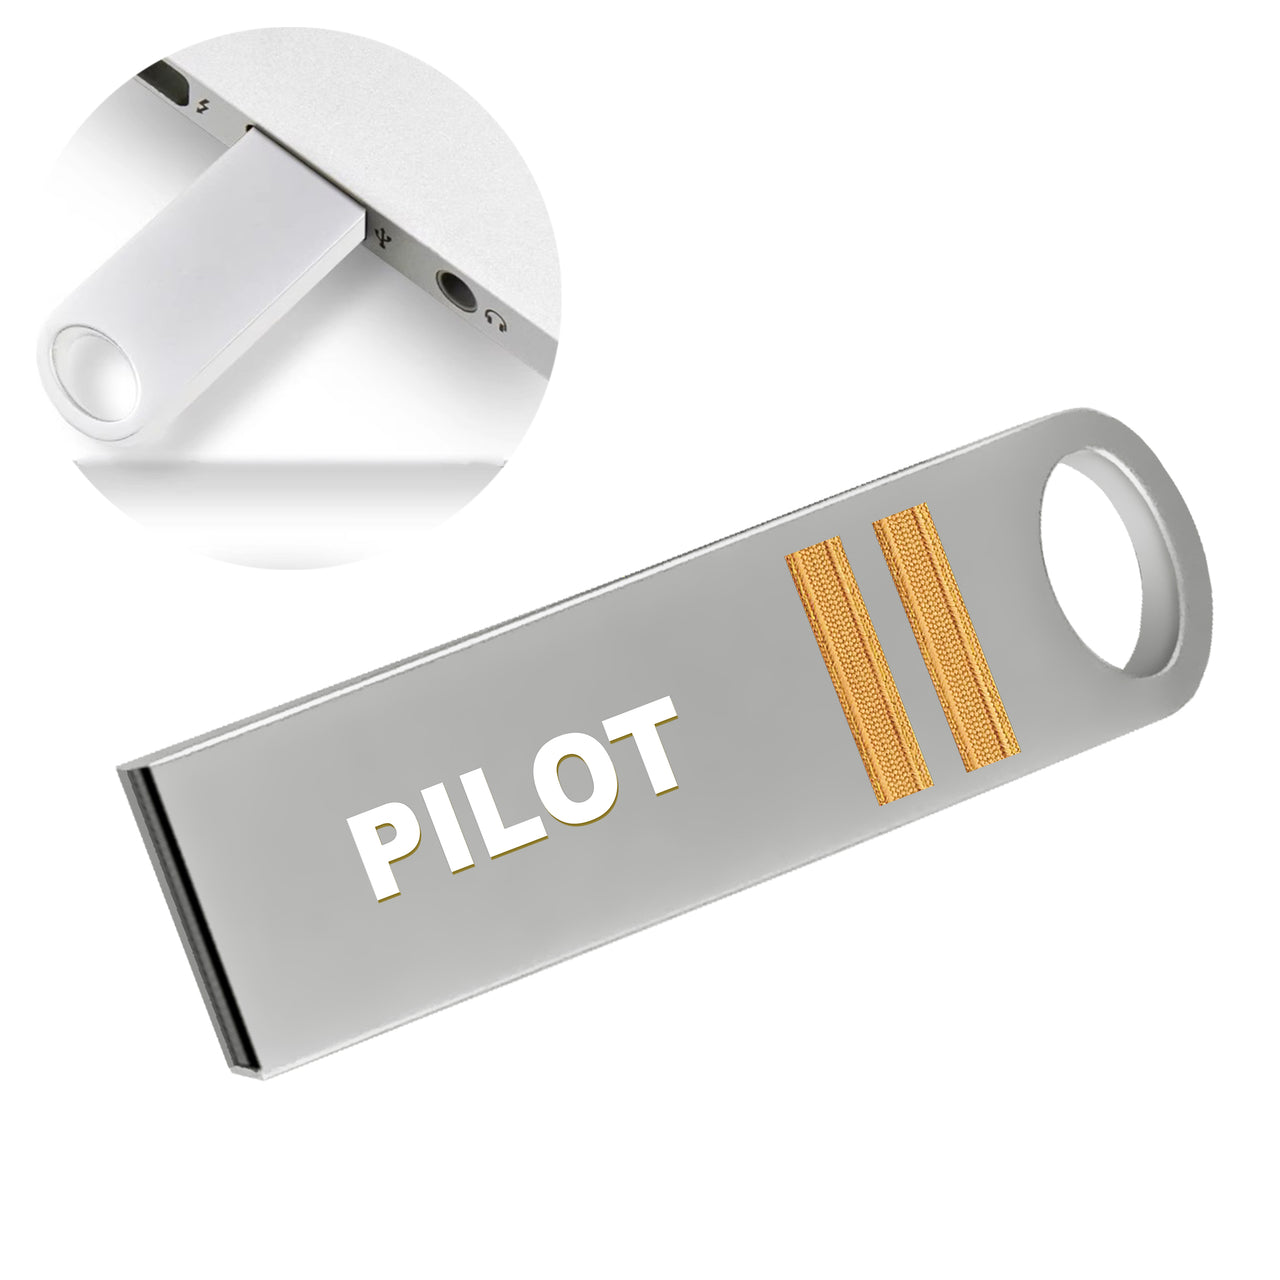 PILOT & Pilot Epaulettes (4,3,2 Lines) Designed Waterproof USB Devices